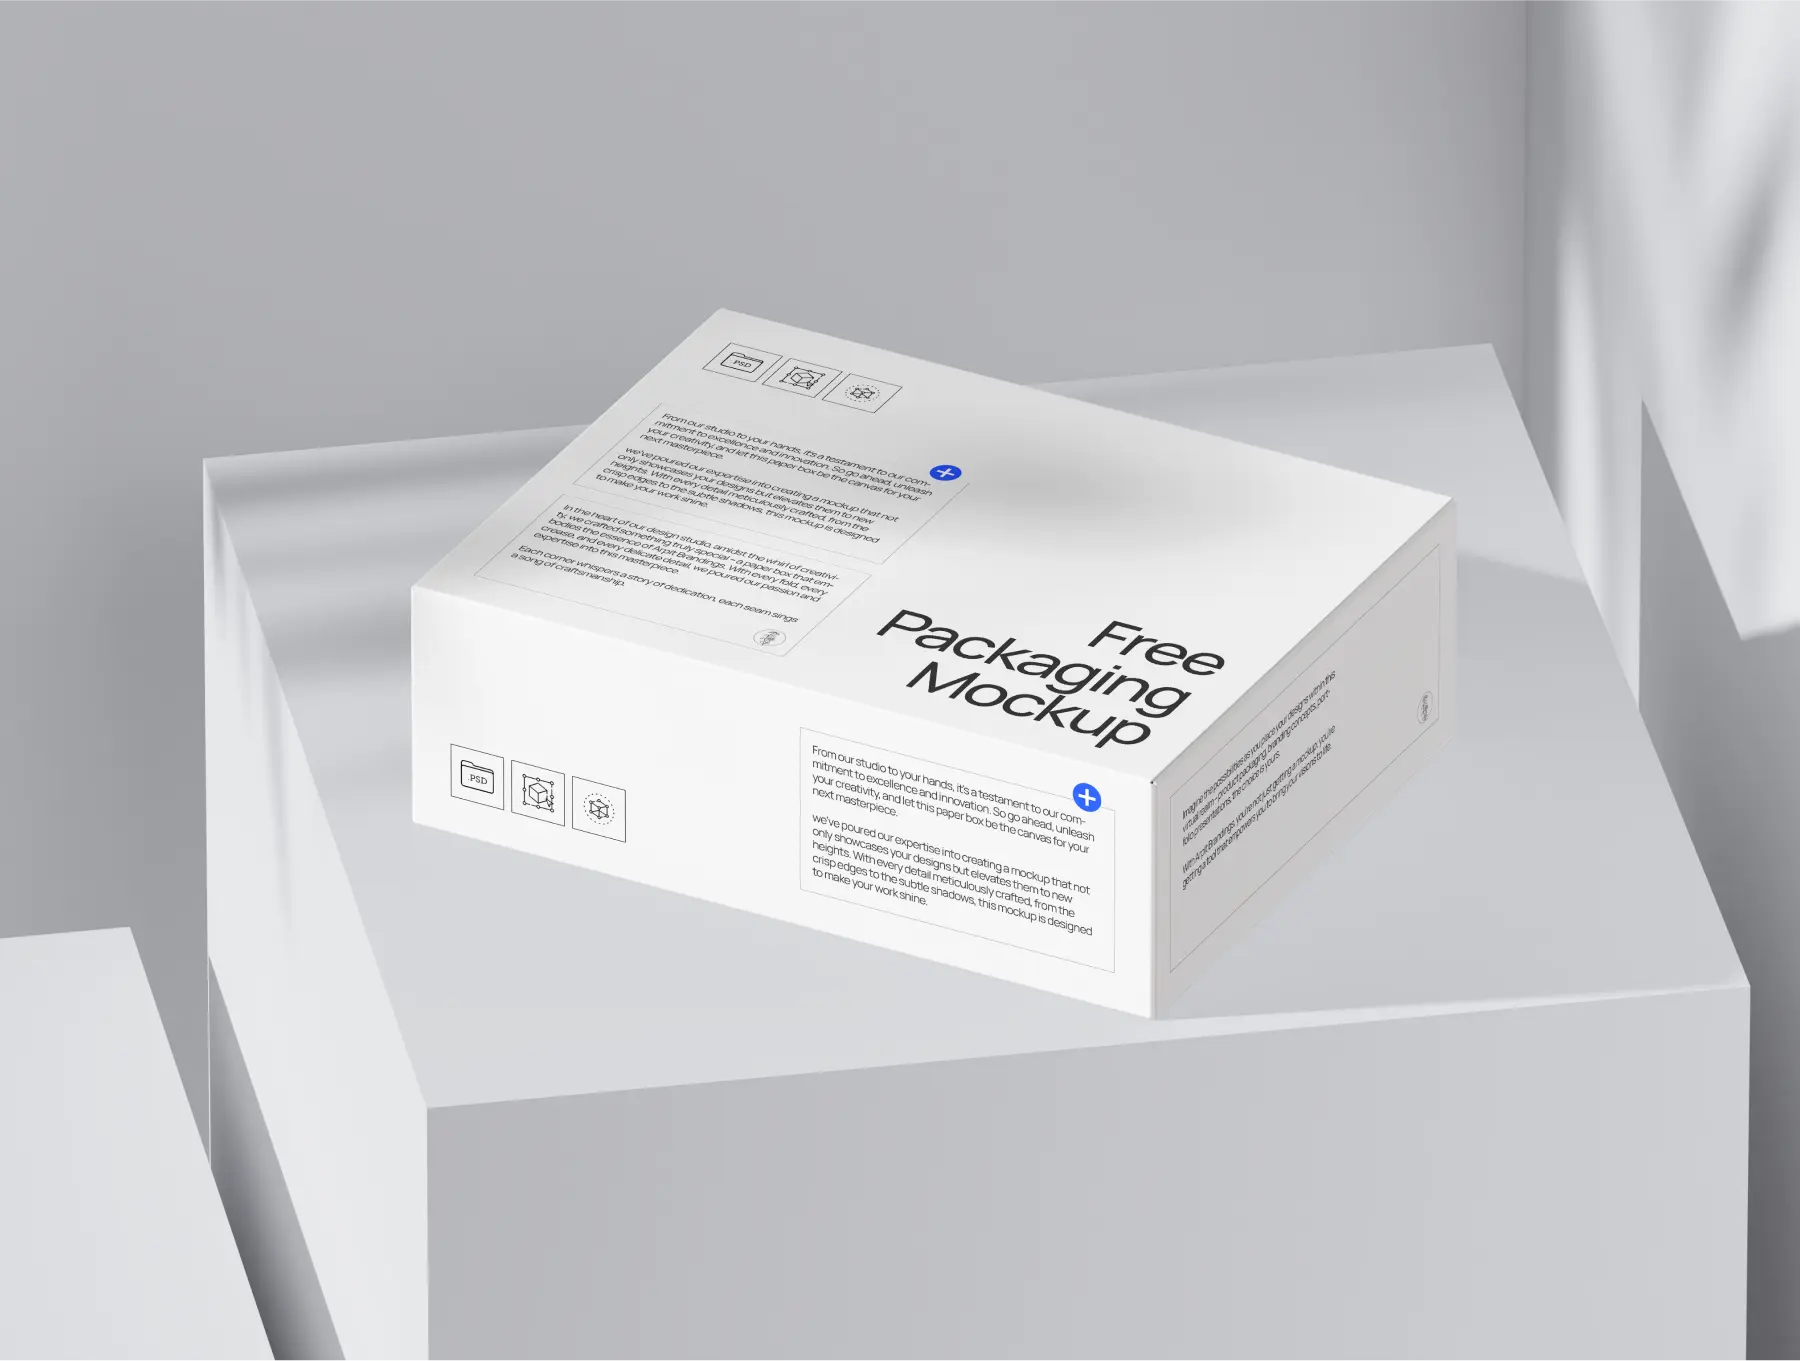 free paper box packaging mockup - by arpit brandings